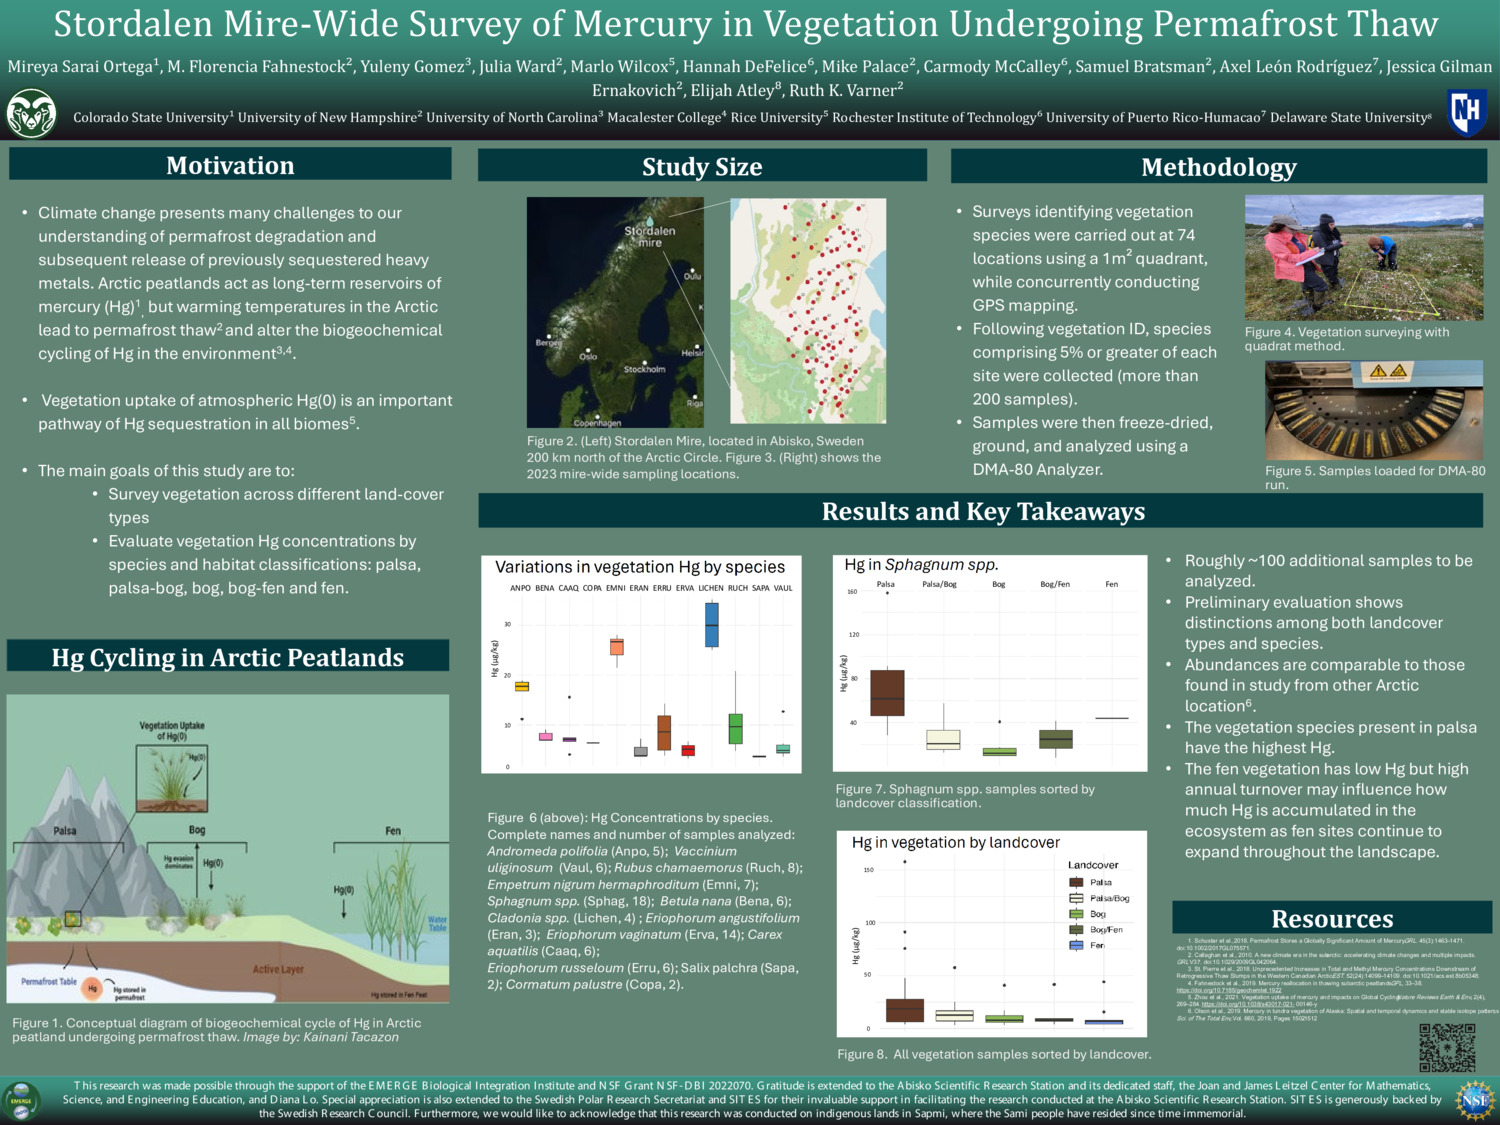 Stordalen Mire-Wide Survey Of Mercury In Vegetation Undergoing Permafrost Thaw by mfmprado